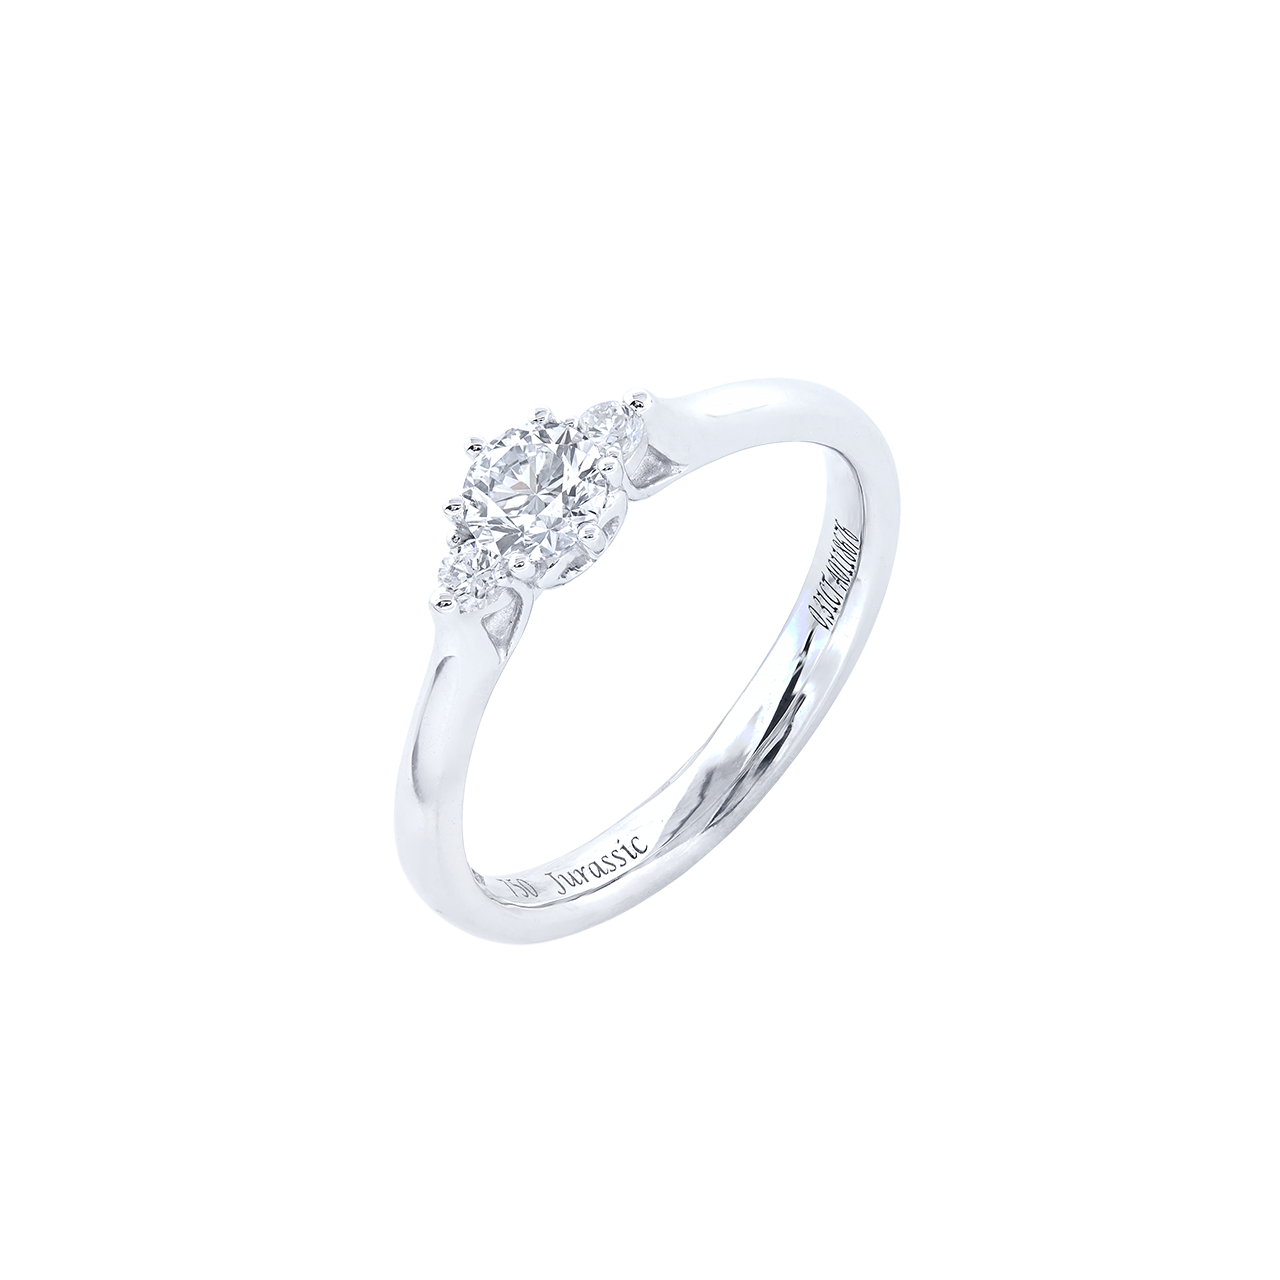 GIA 0.31 克拉 白鑽戒
E VS2 Diamond Ring